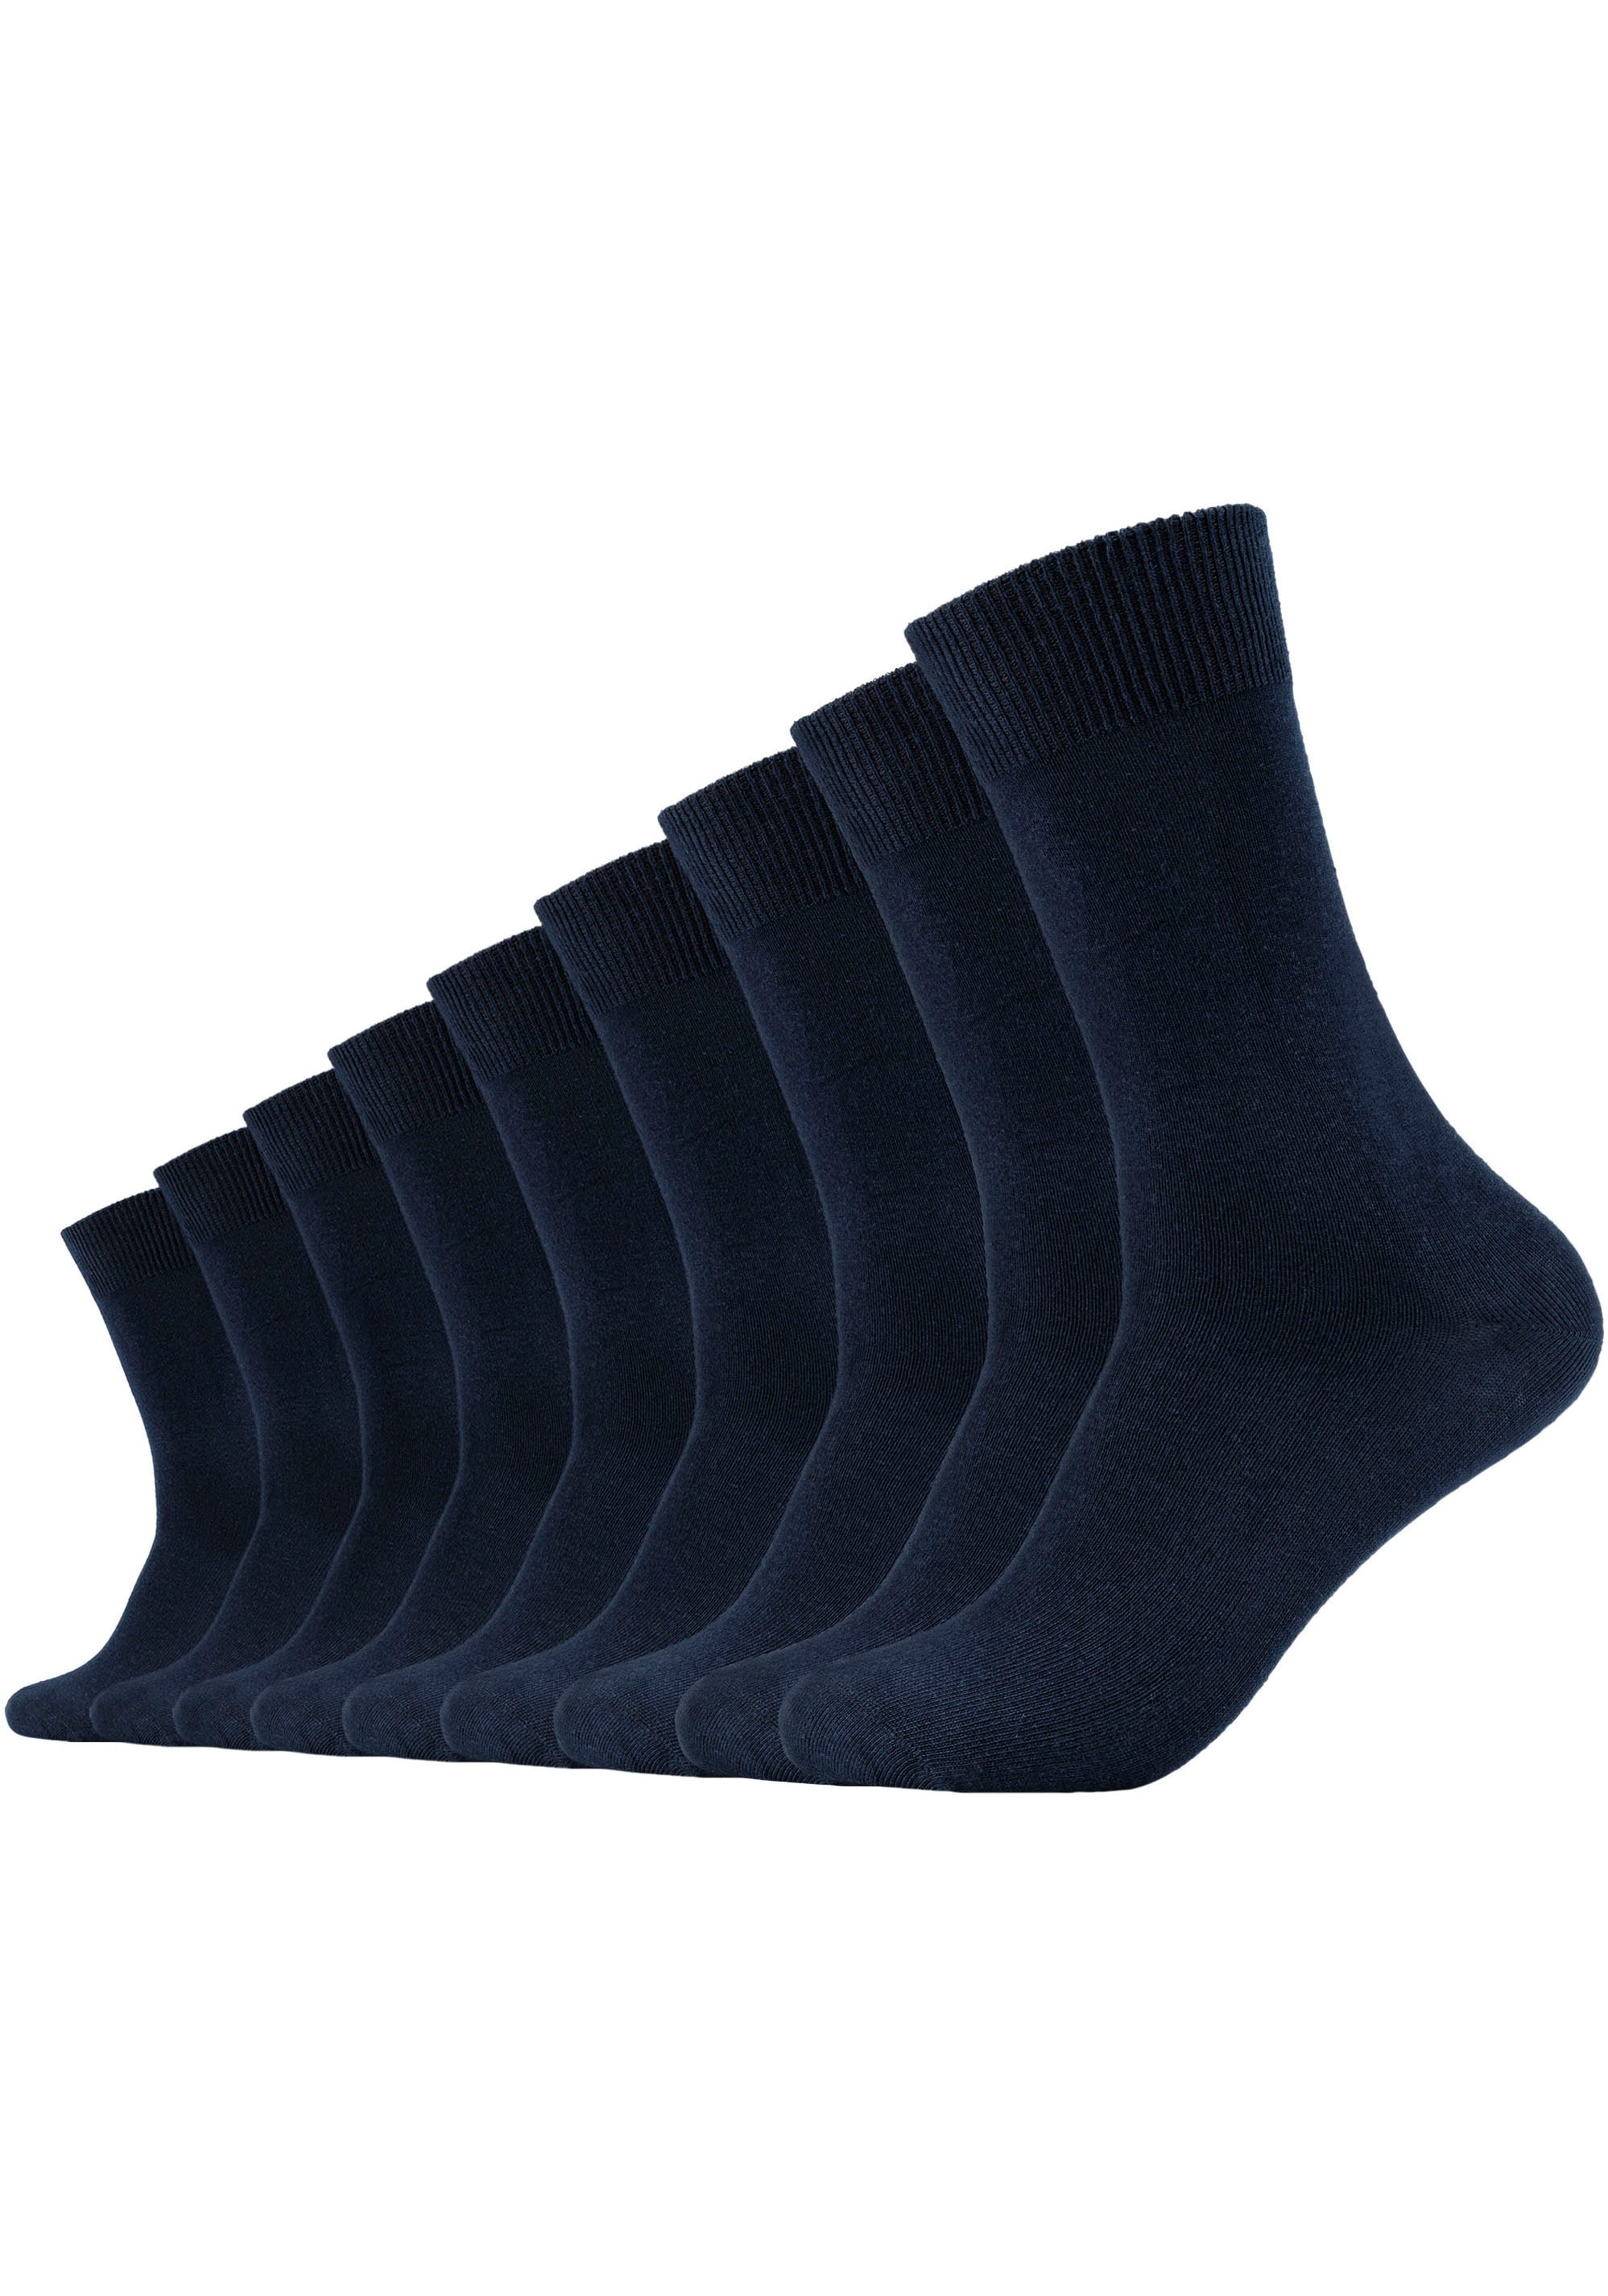 Strümpfe Socken ➤ & ohne Mindestbestellwert kaufen